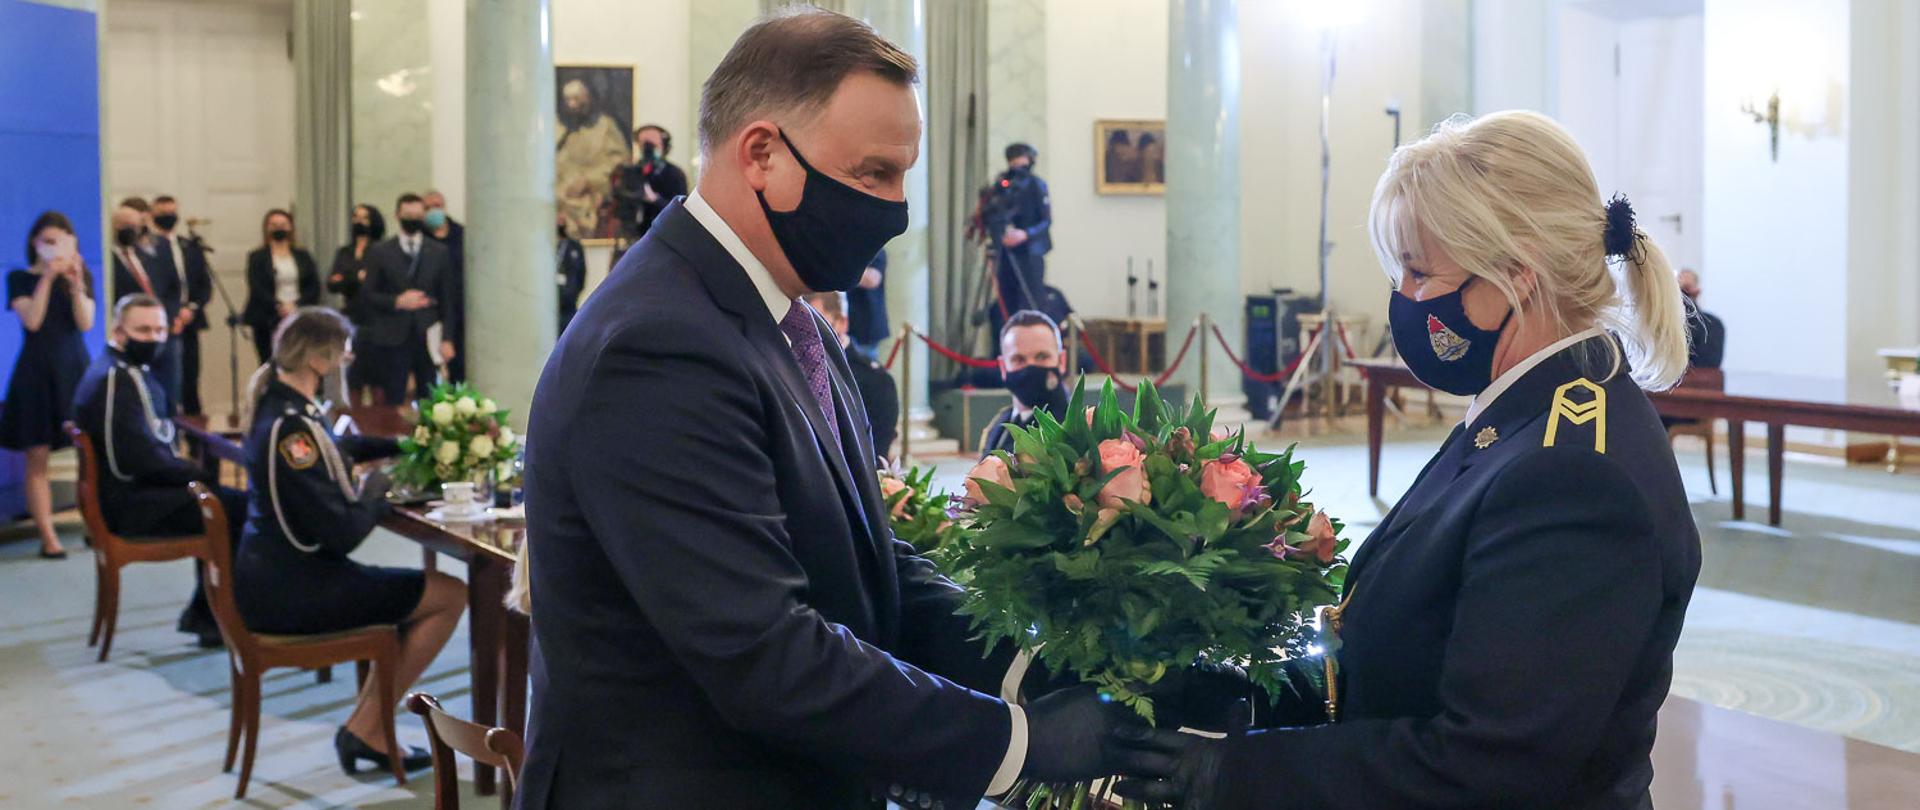 Prezydent wręcza bukiet kwiatów kobiecie strażak PSP